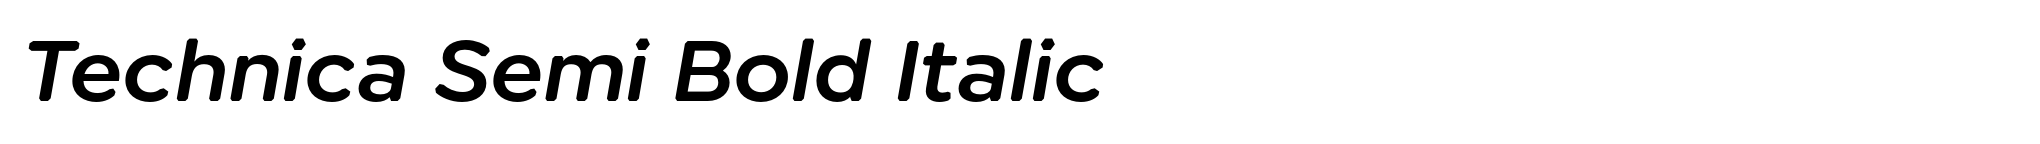 Technica Semi Bold Italic image